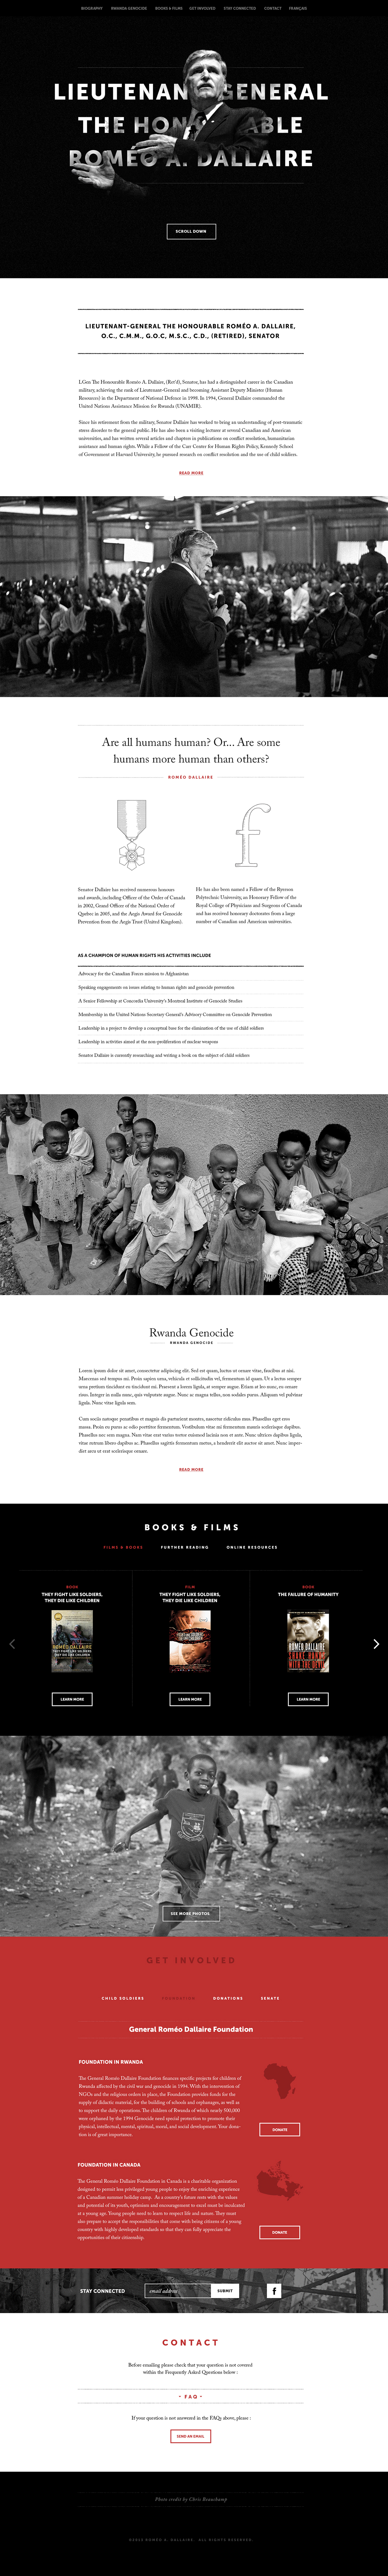 romeo dallaire Rwanda africa Humanitarian